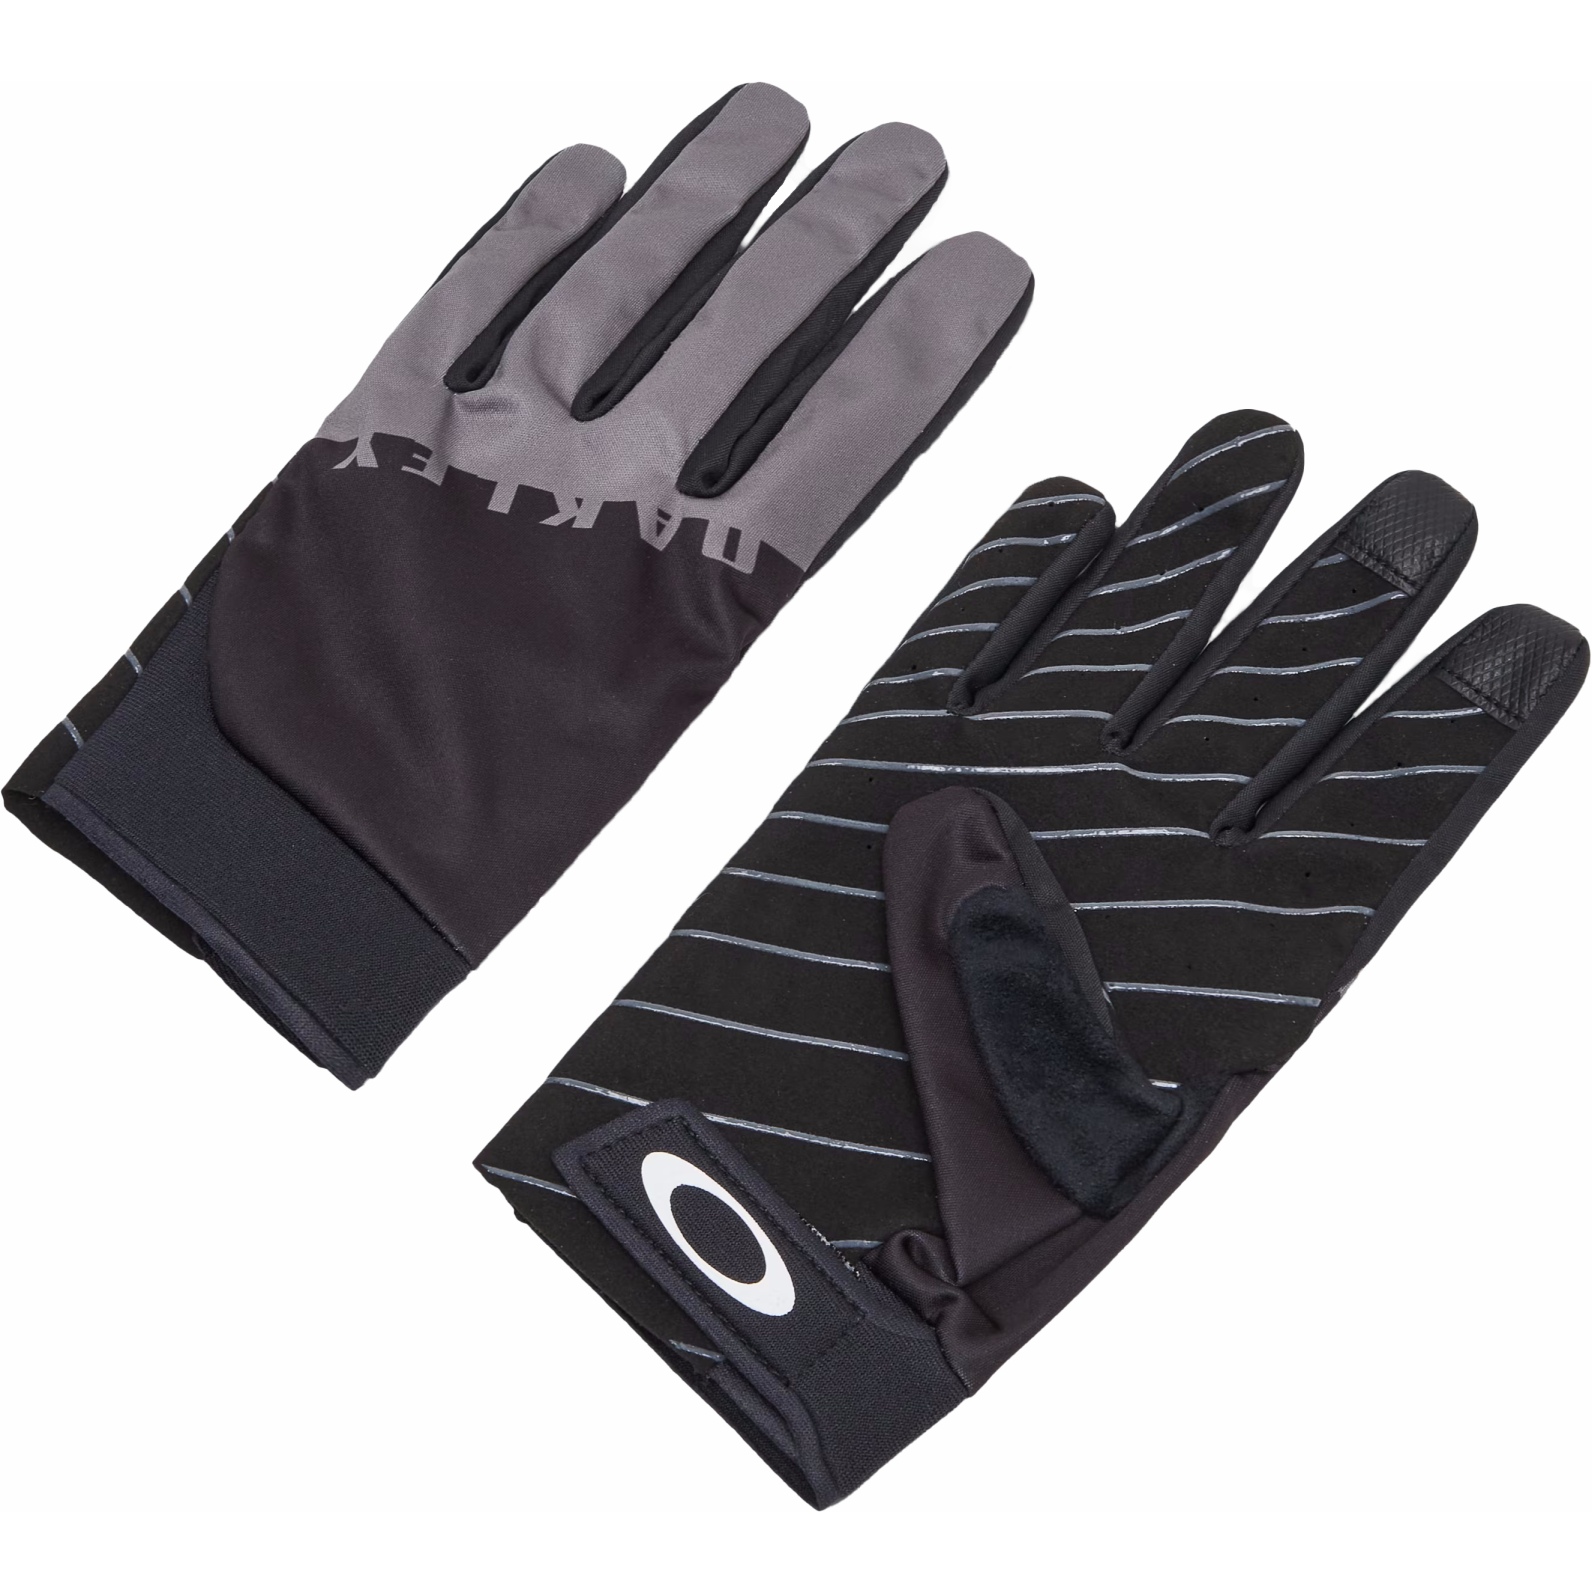 Productfoto van Oakley Icon Classic Road Handschoenen - Blackout